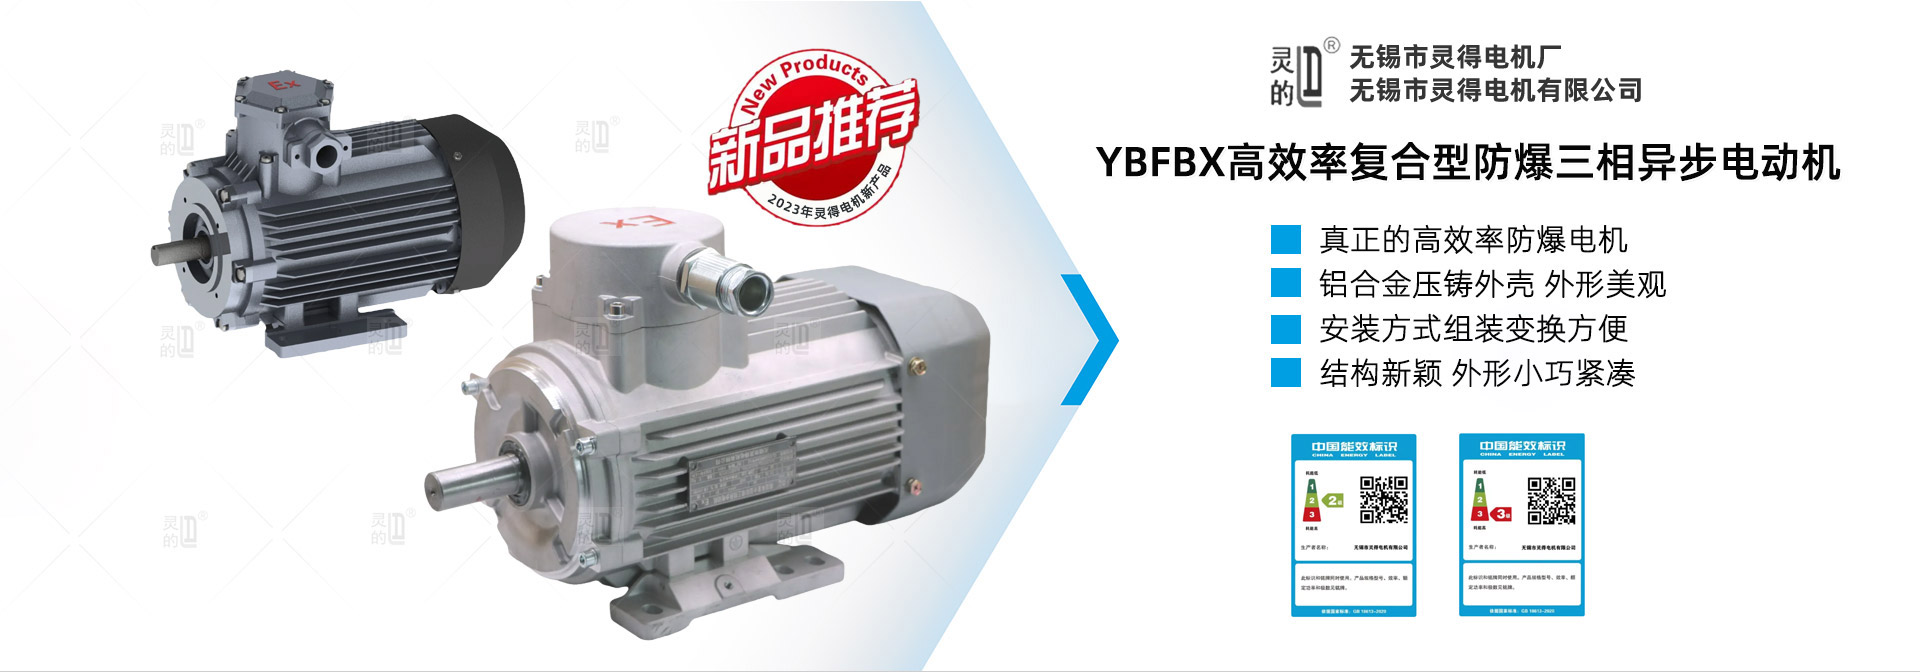 YBFBX高效率复合型防爆三相异步电动机